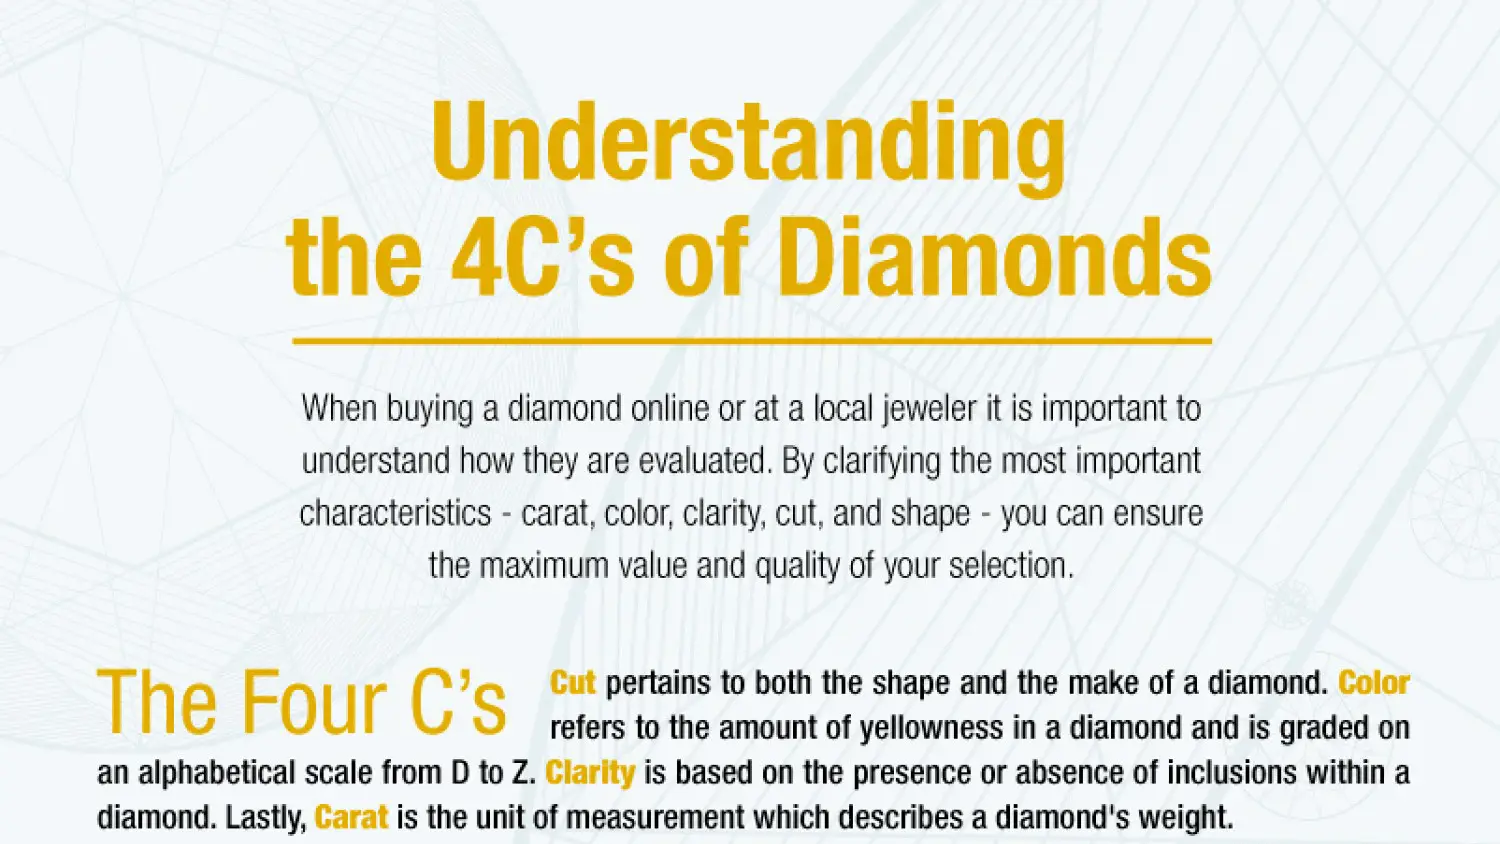 Understanding the 4C's of diamonds